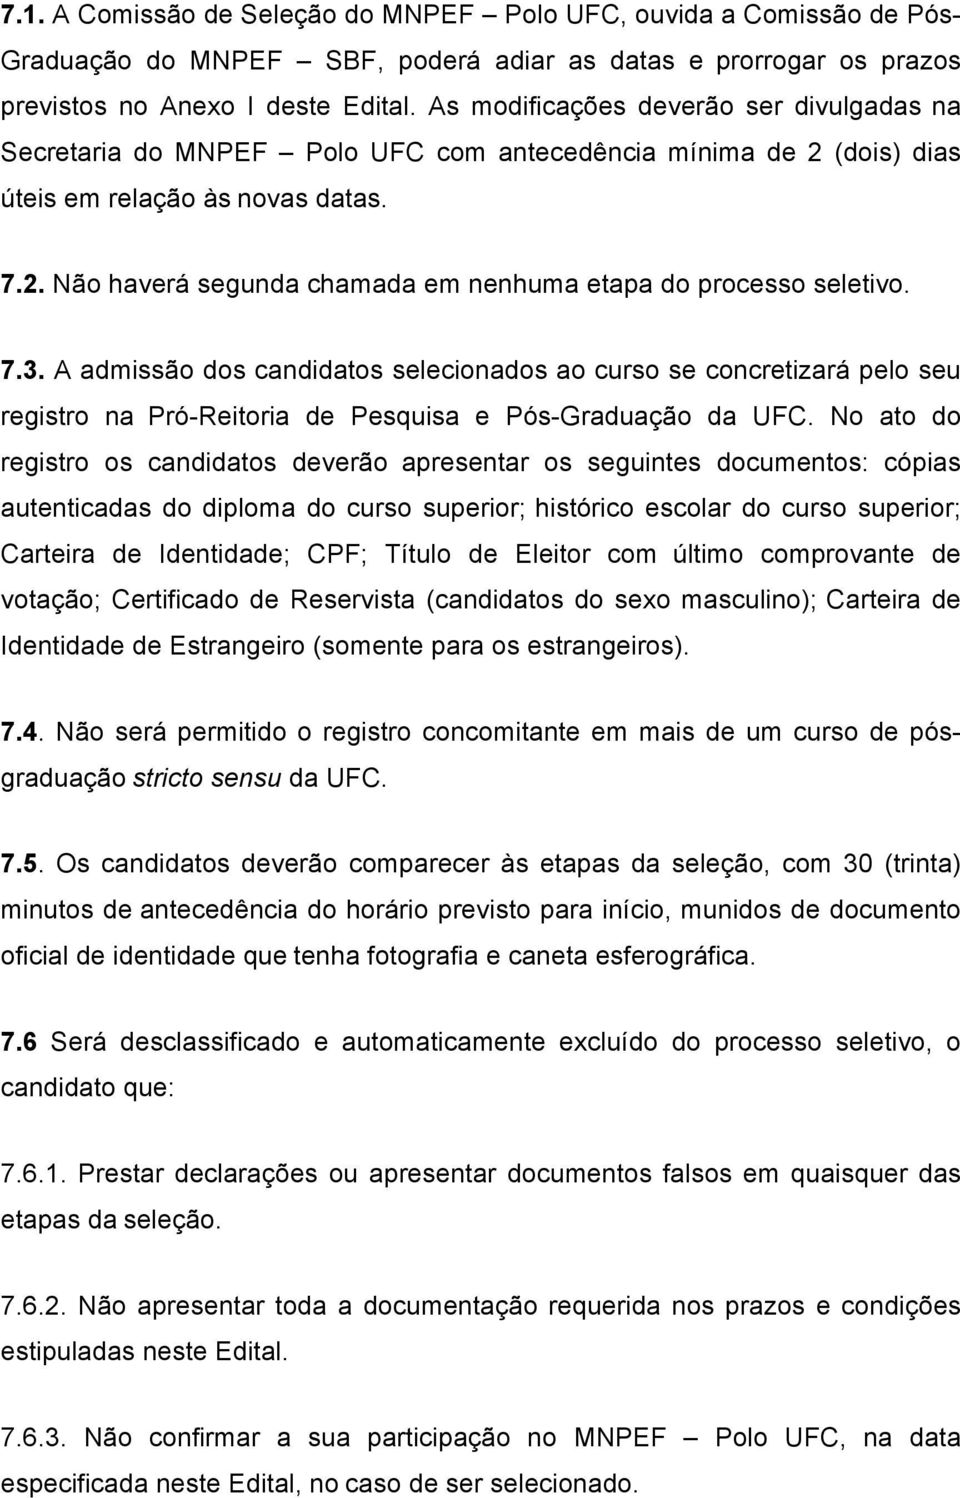 7.3. A admissão dos candidatos selecionados ao curso se concretizará pelo seu registro na Pró-Reitoria de Pesquisa e Pós-Graduação da UFC.